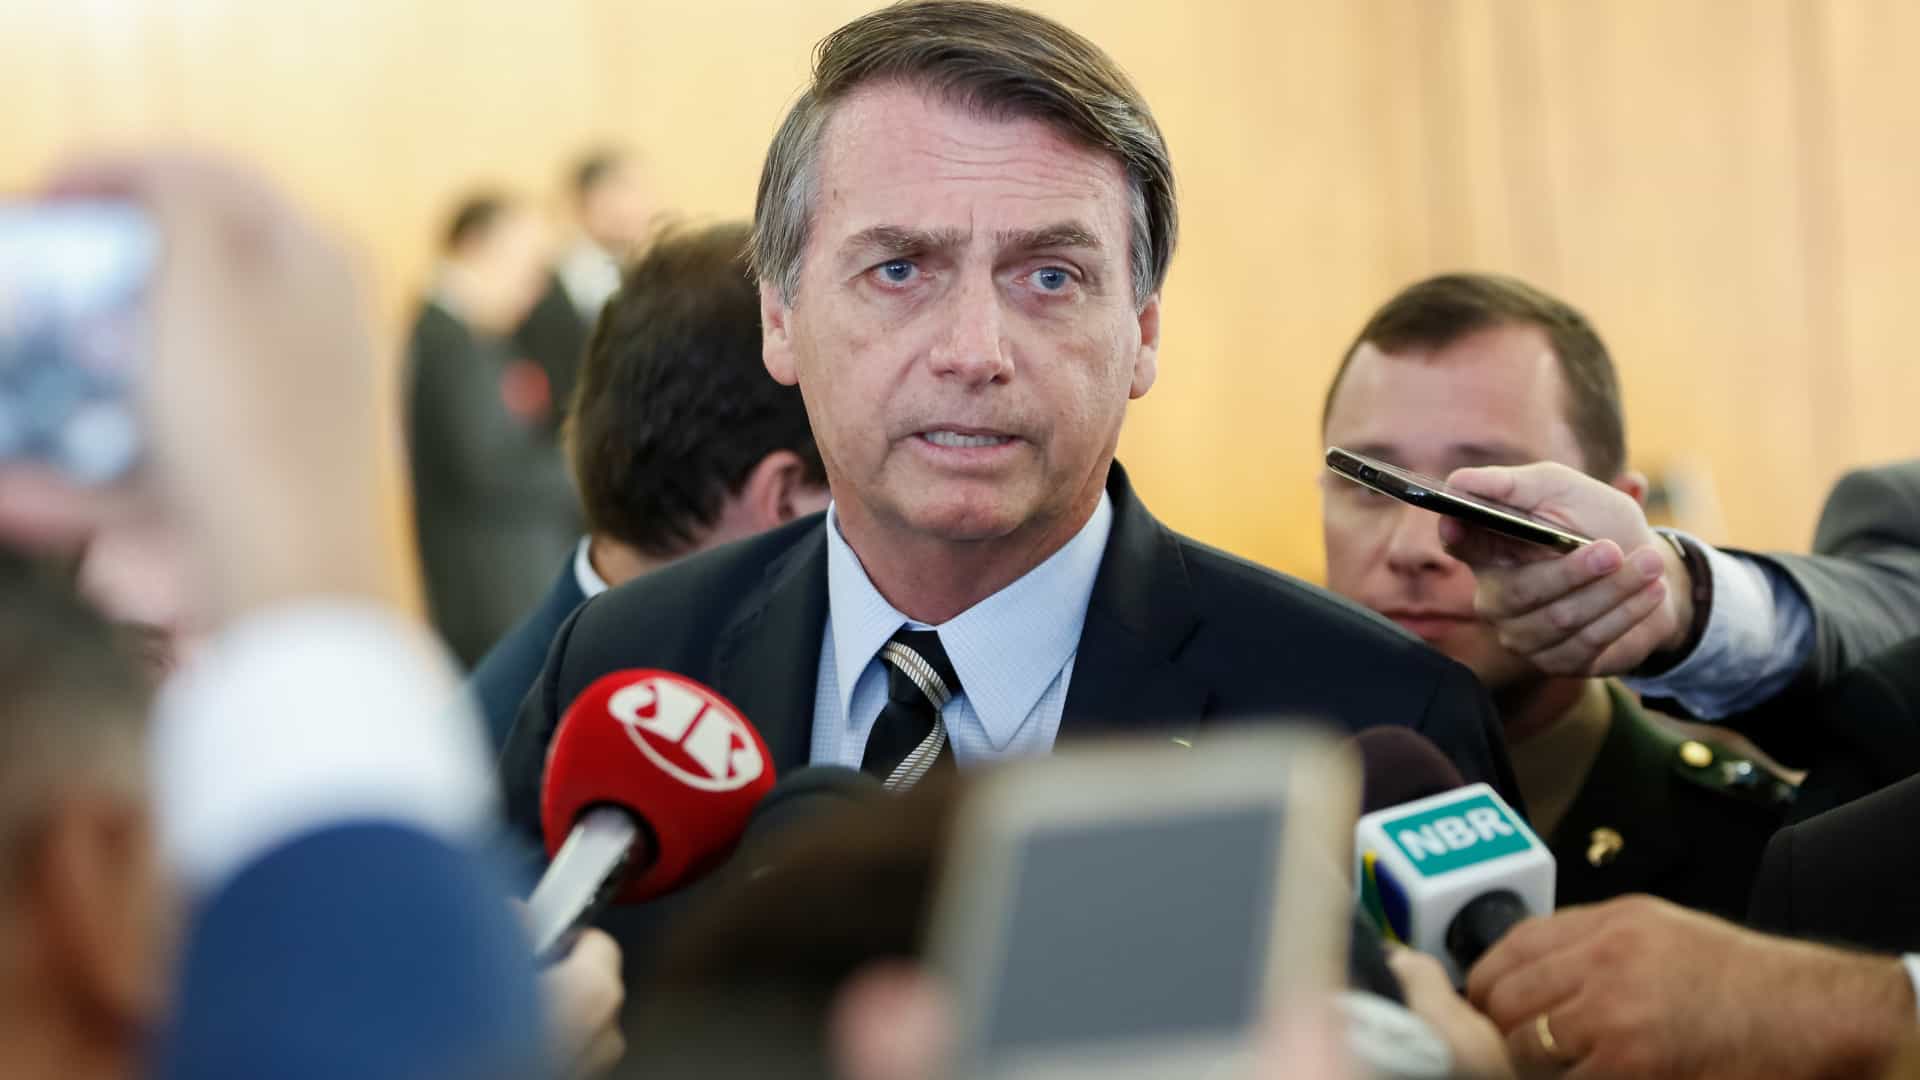 Se reforma da Previdência não for aprovada, Brasil quebra, diz Bolsonaro